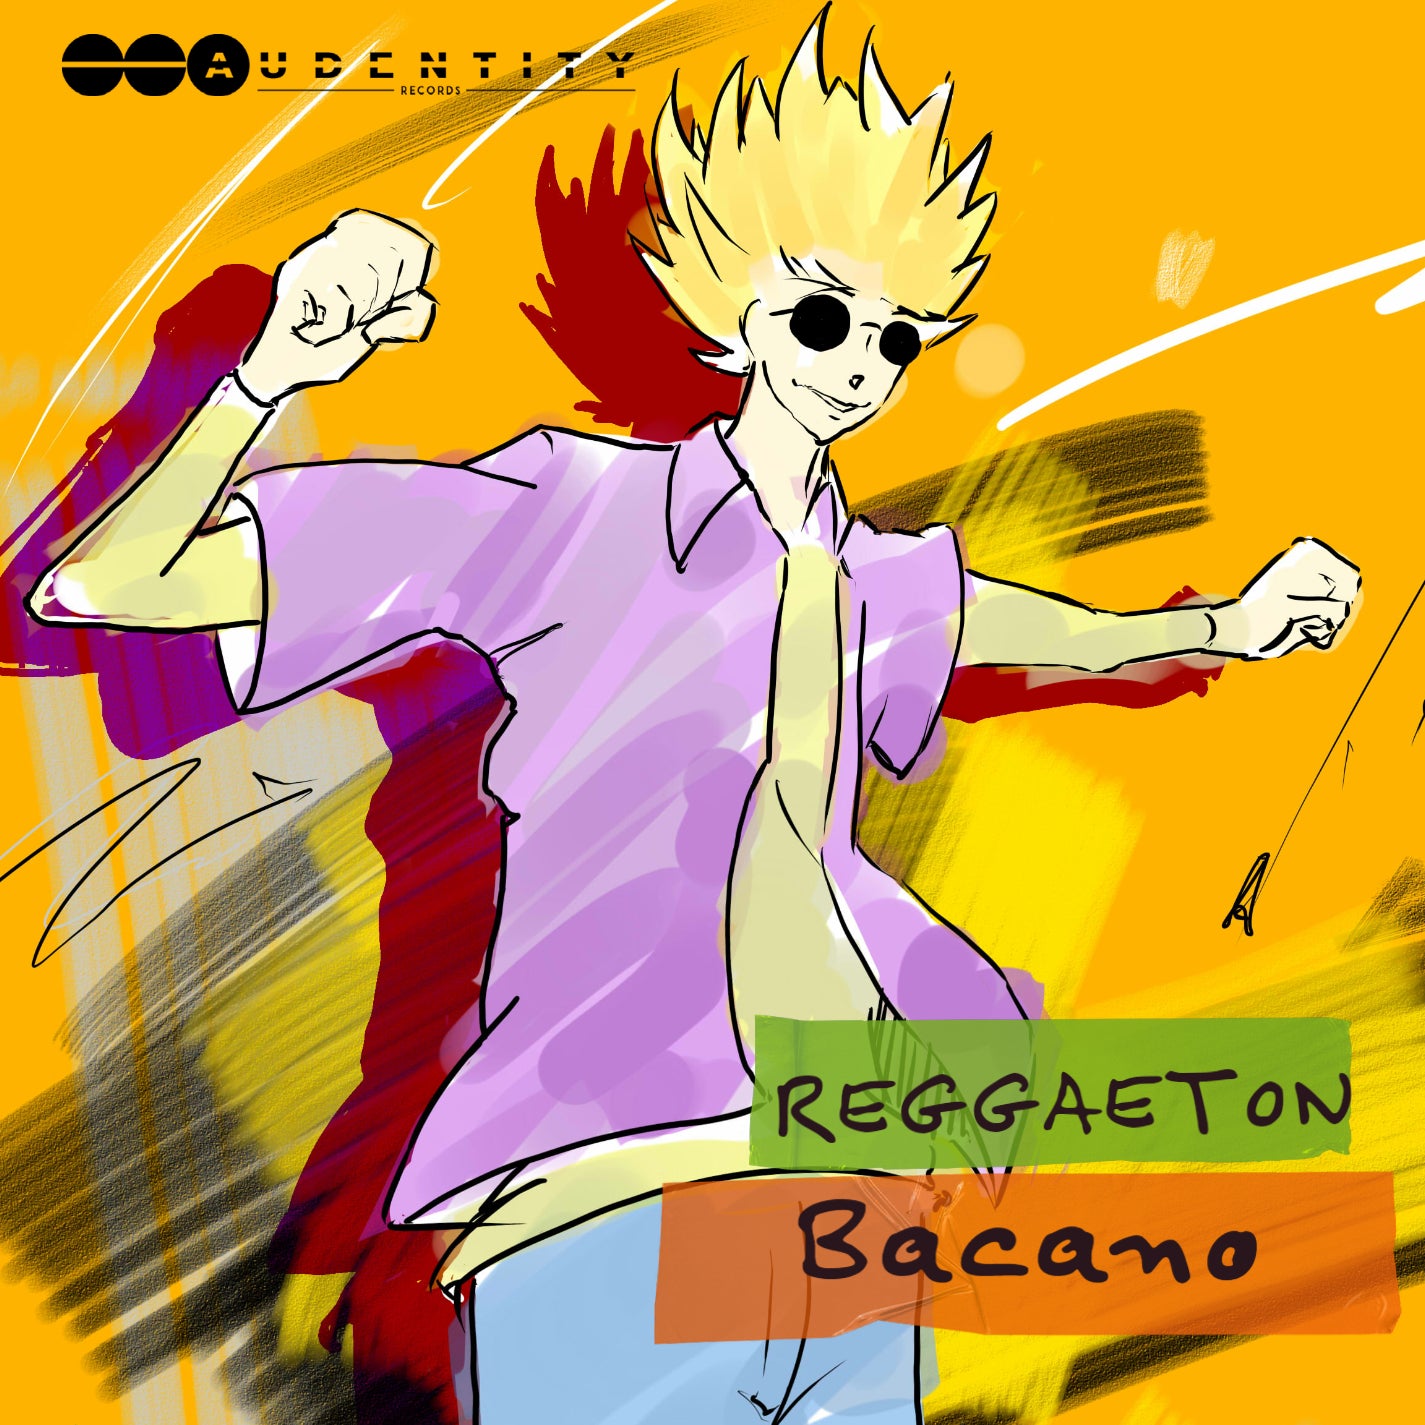 Reggaeton Bacano